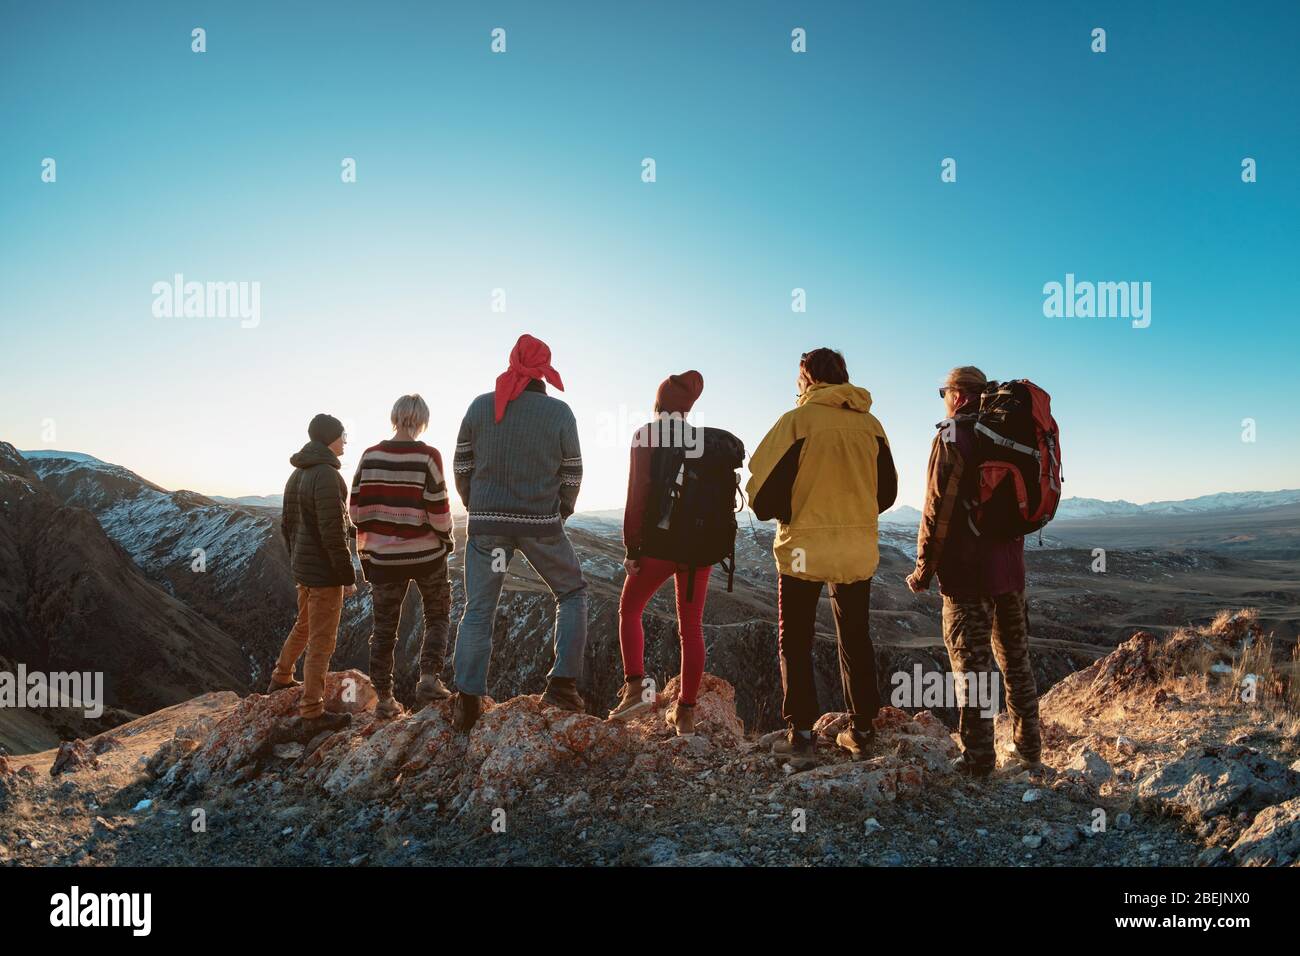 Eine Gruppe von Wanderern steht auf dem Gipfel des Berges und blickt auf den Sonnenuntergang Stockfoto